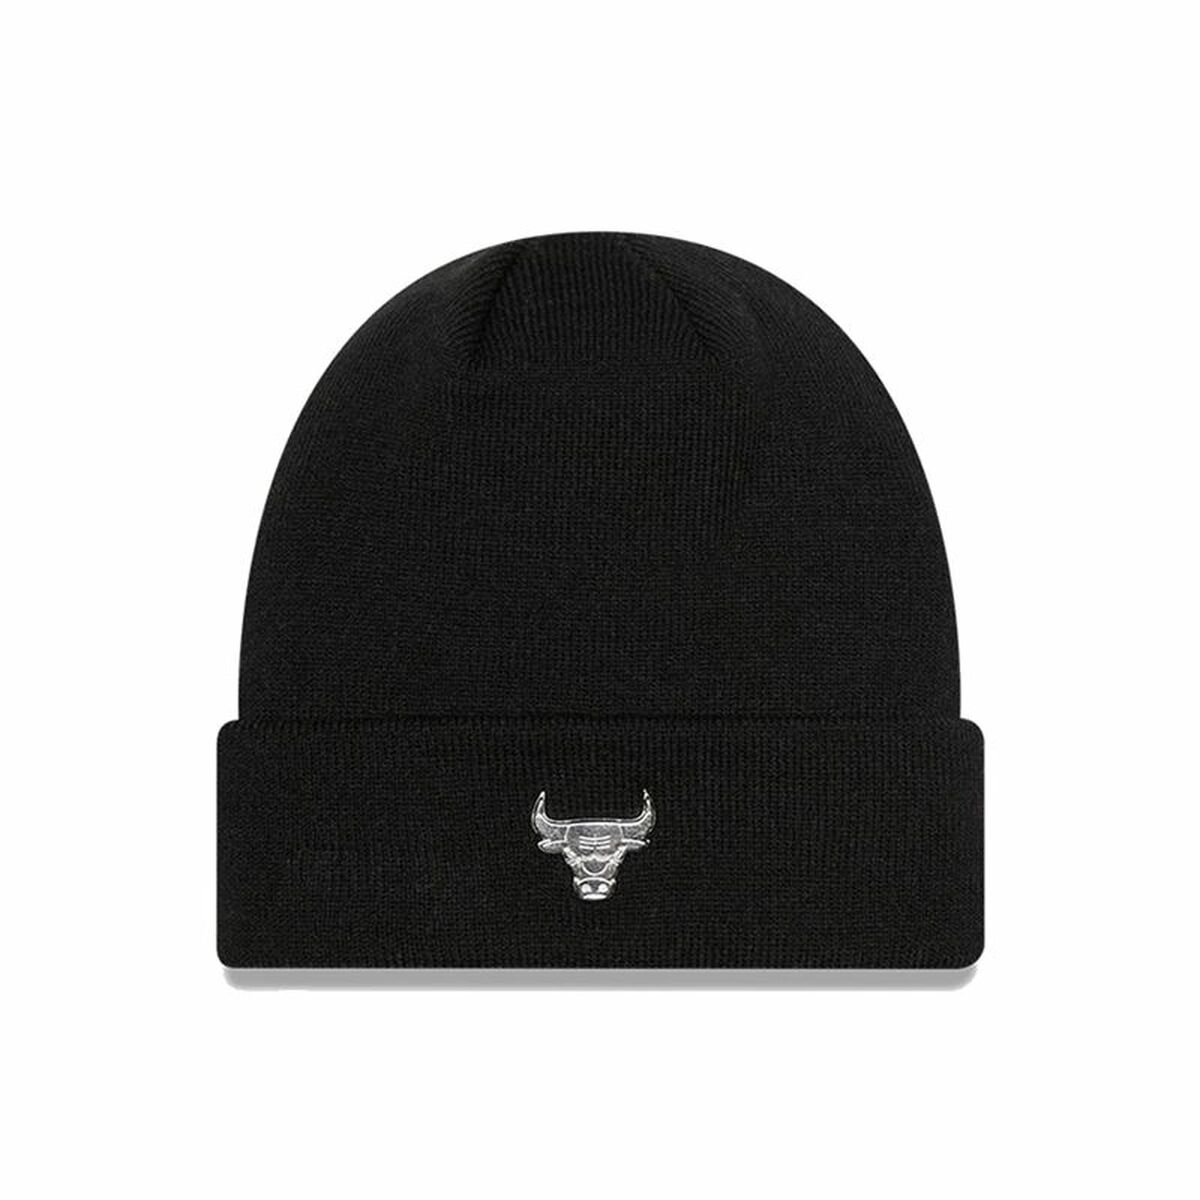 Pălărie New Era NBA Chicago Bulls Metallic Negru Mărime unică